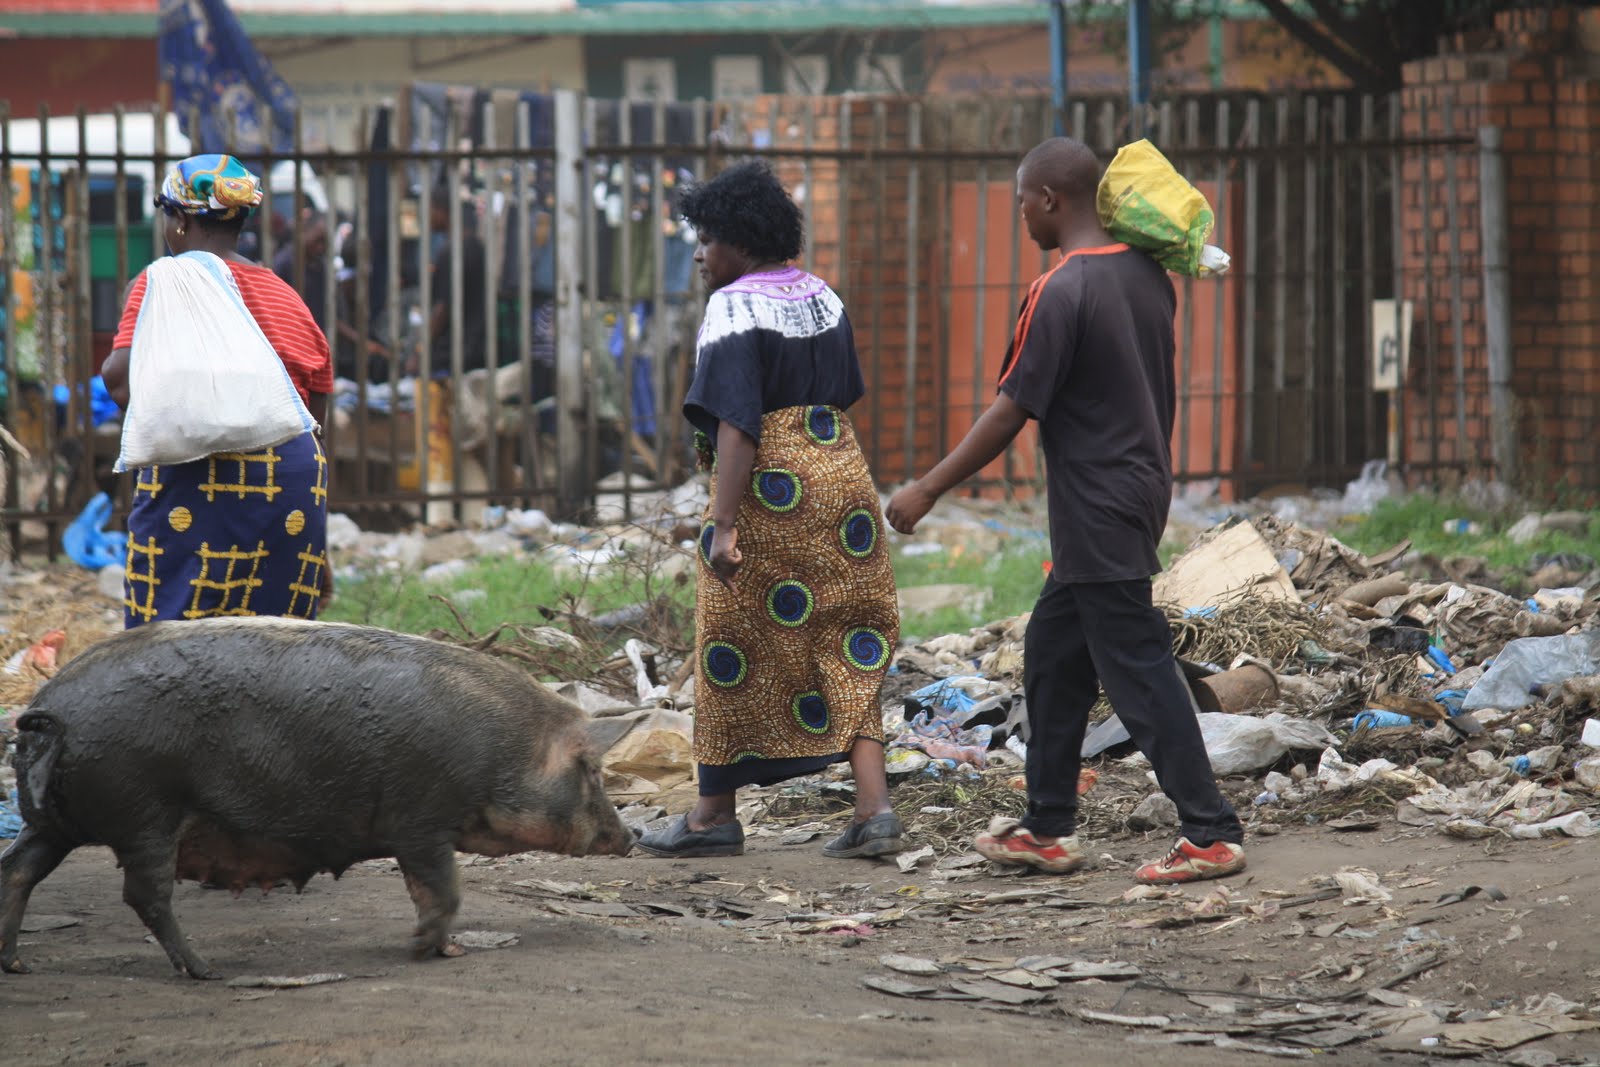 یک خوک در میان زباله های بازار سووتو